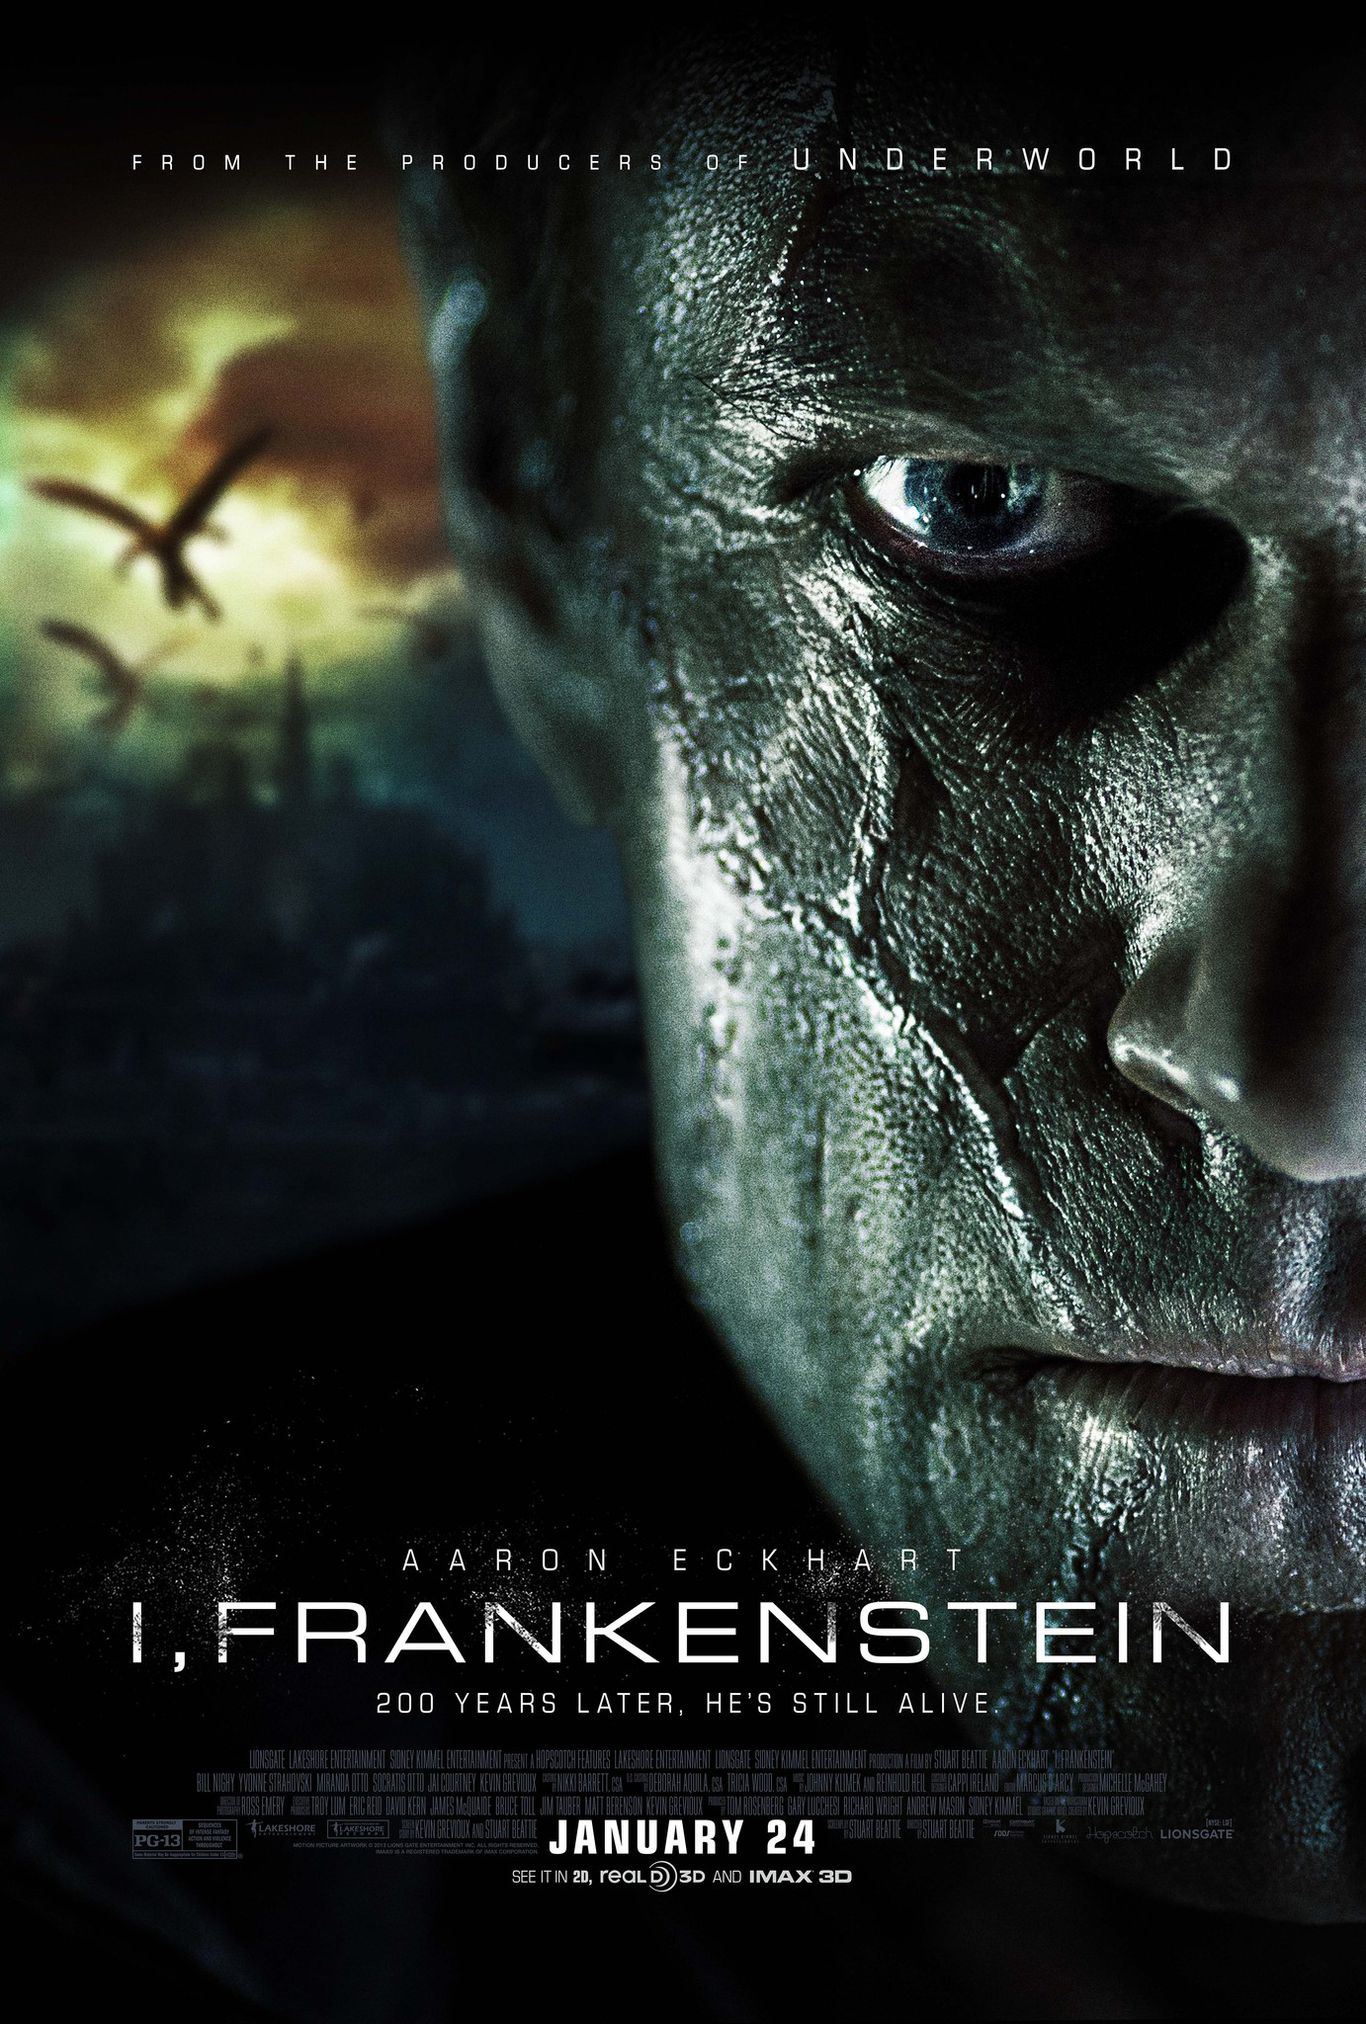 Chiến Binh Frankenstein